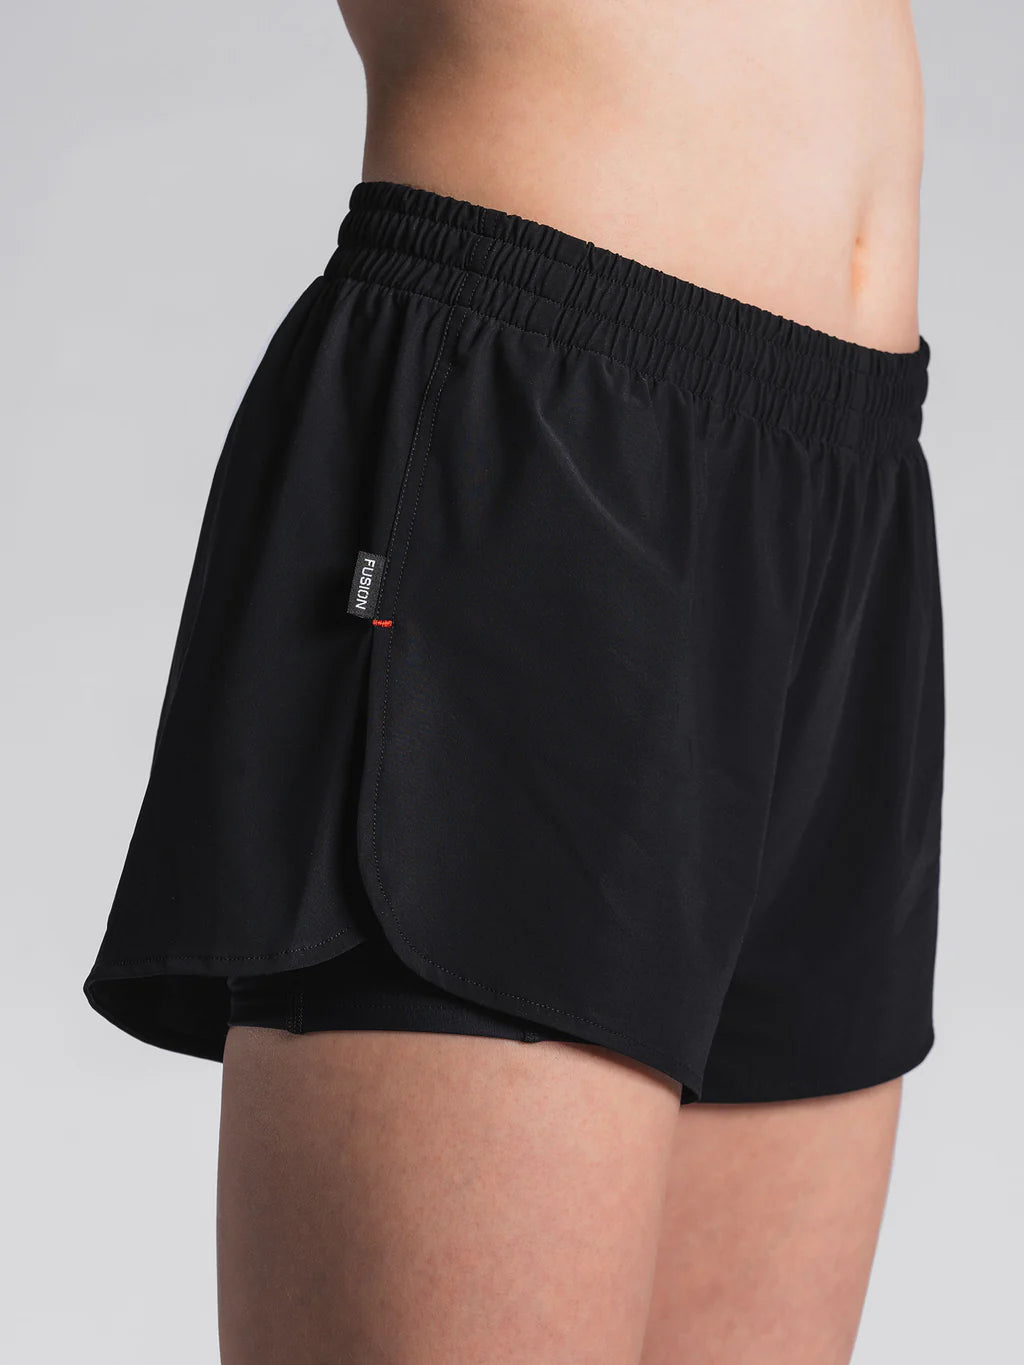 womens run shorts waistband